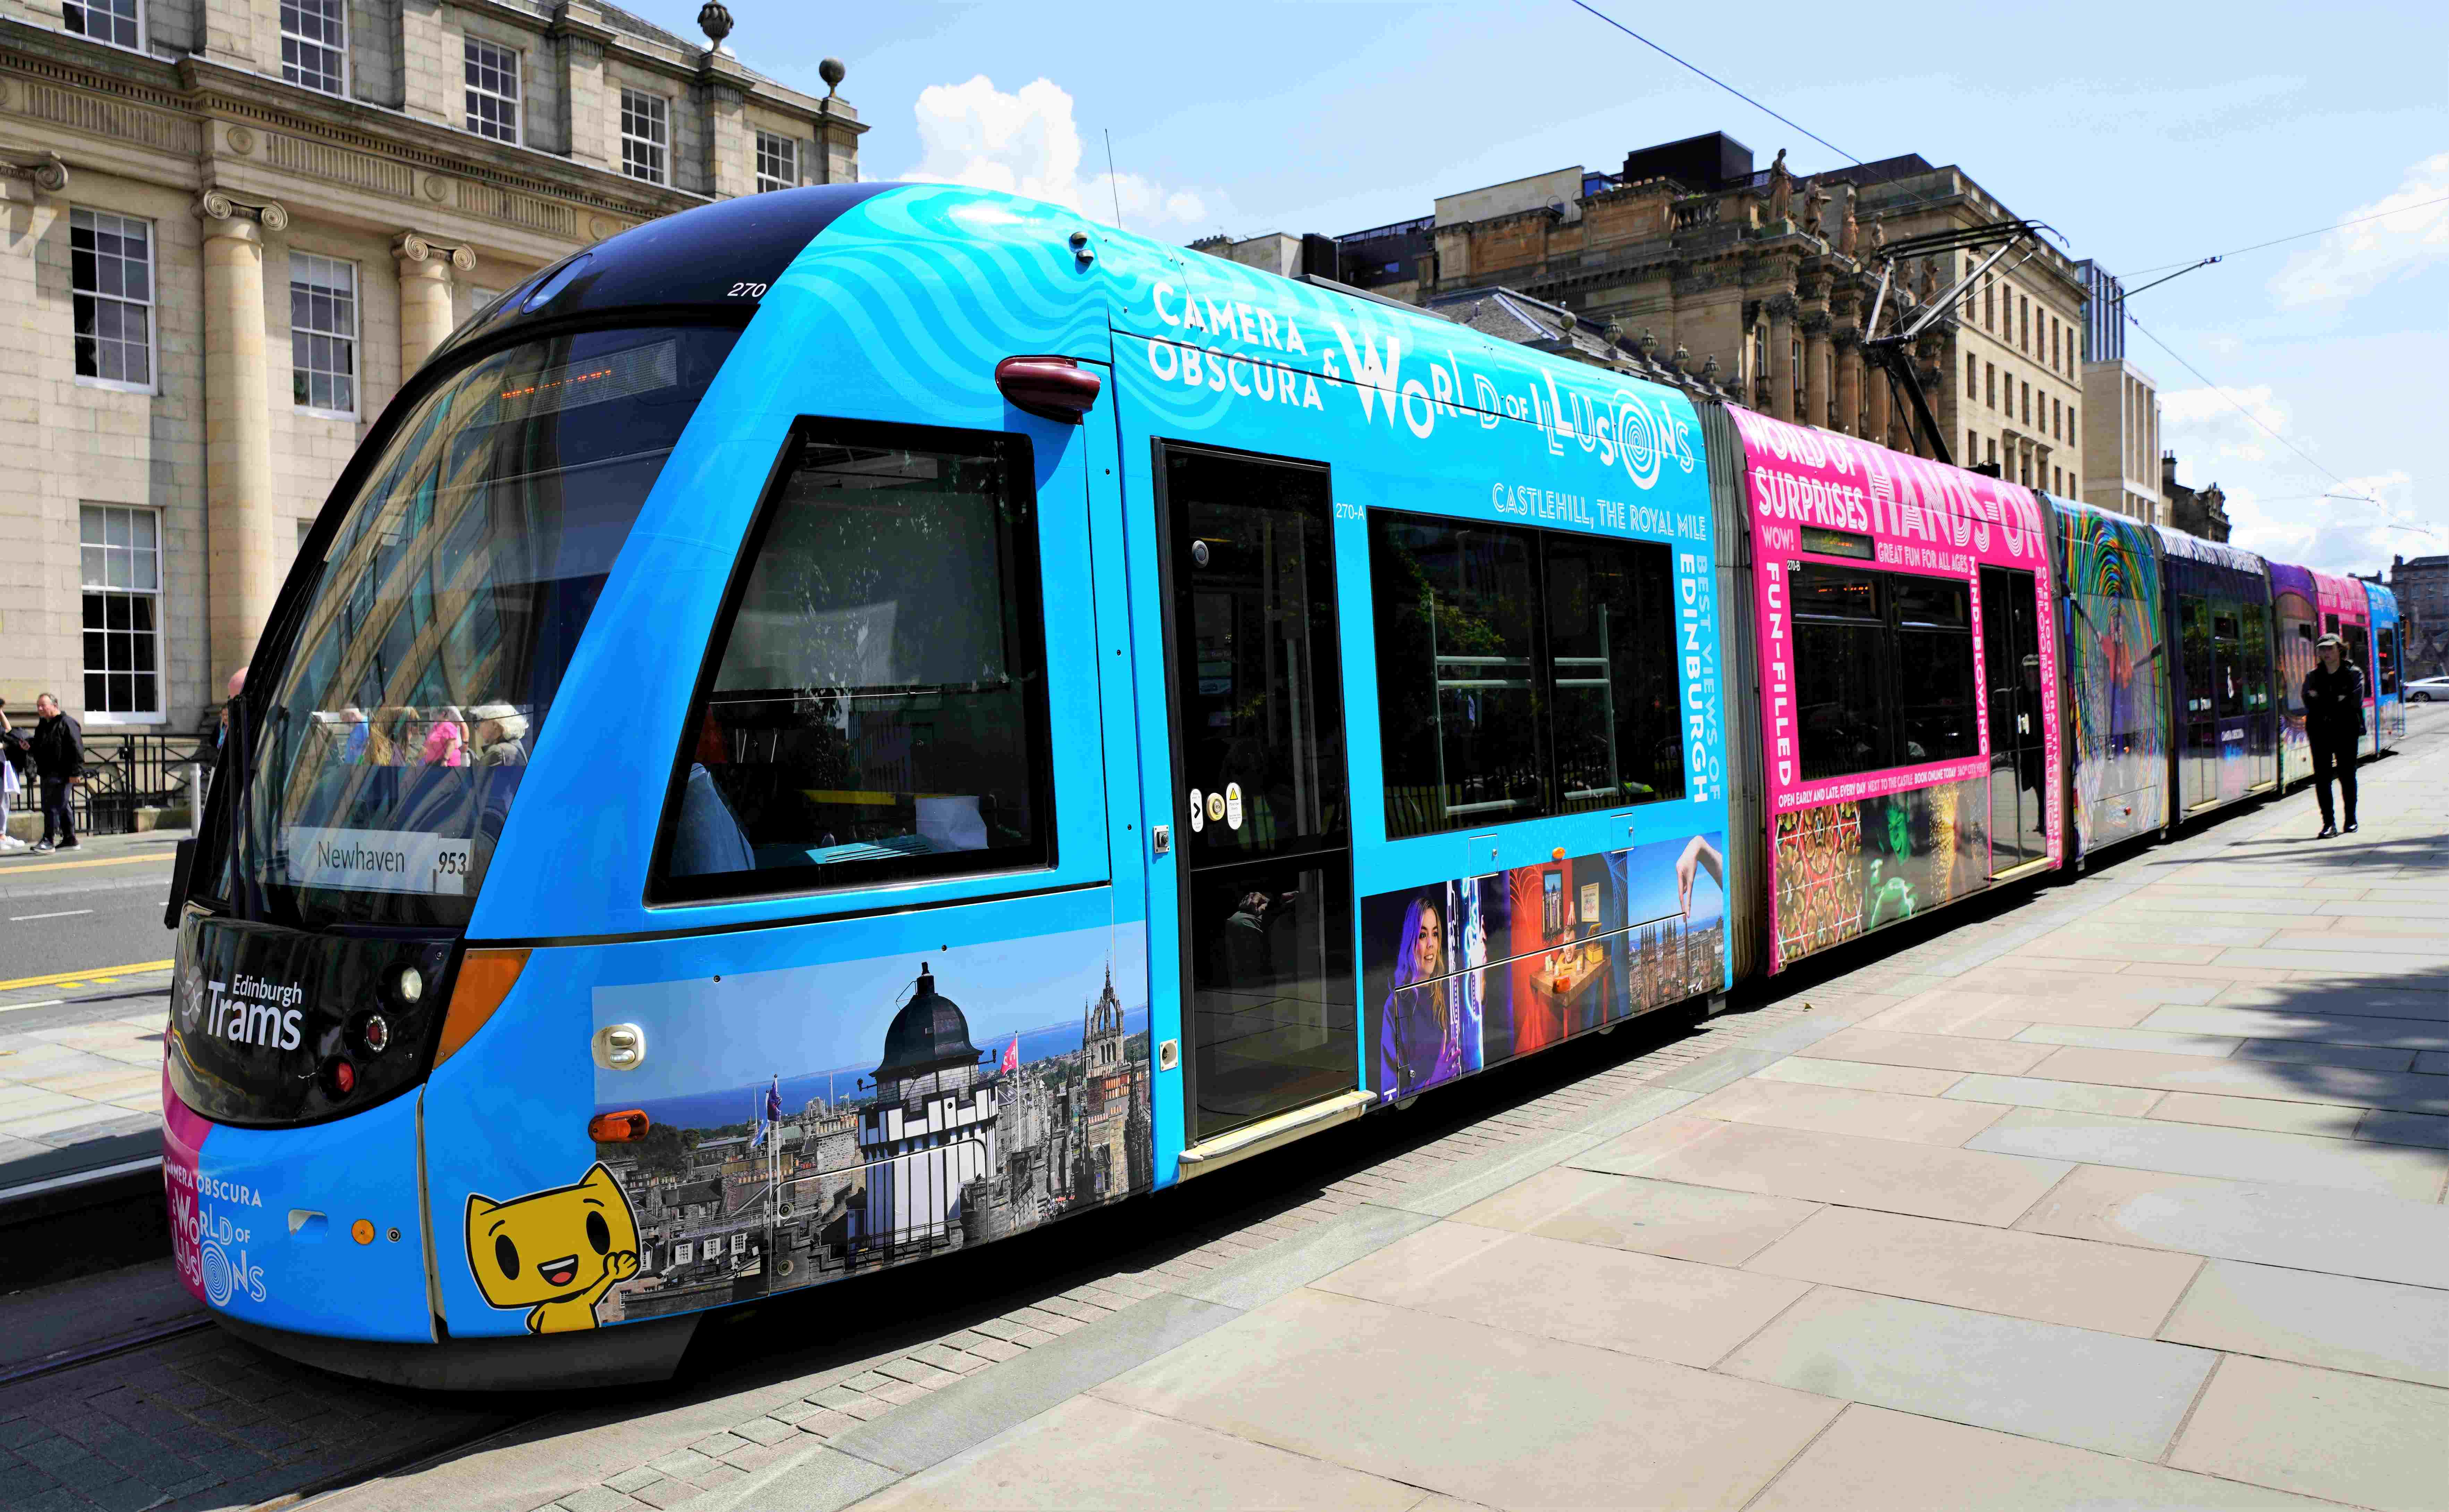 Edinburgh Tram featuring Camera Obscura